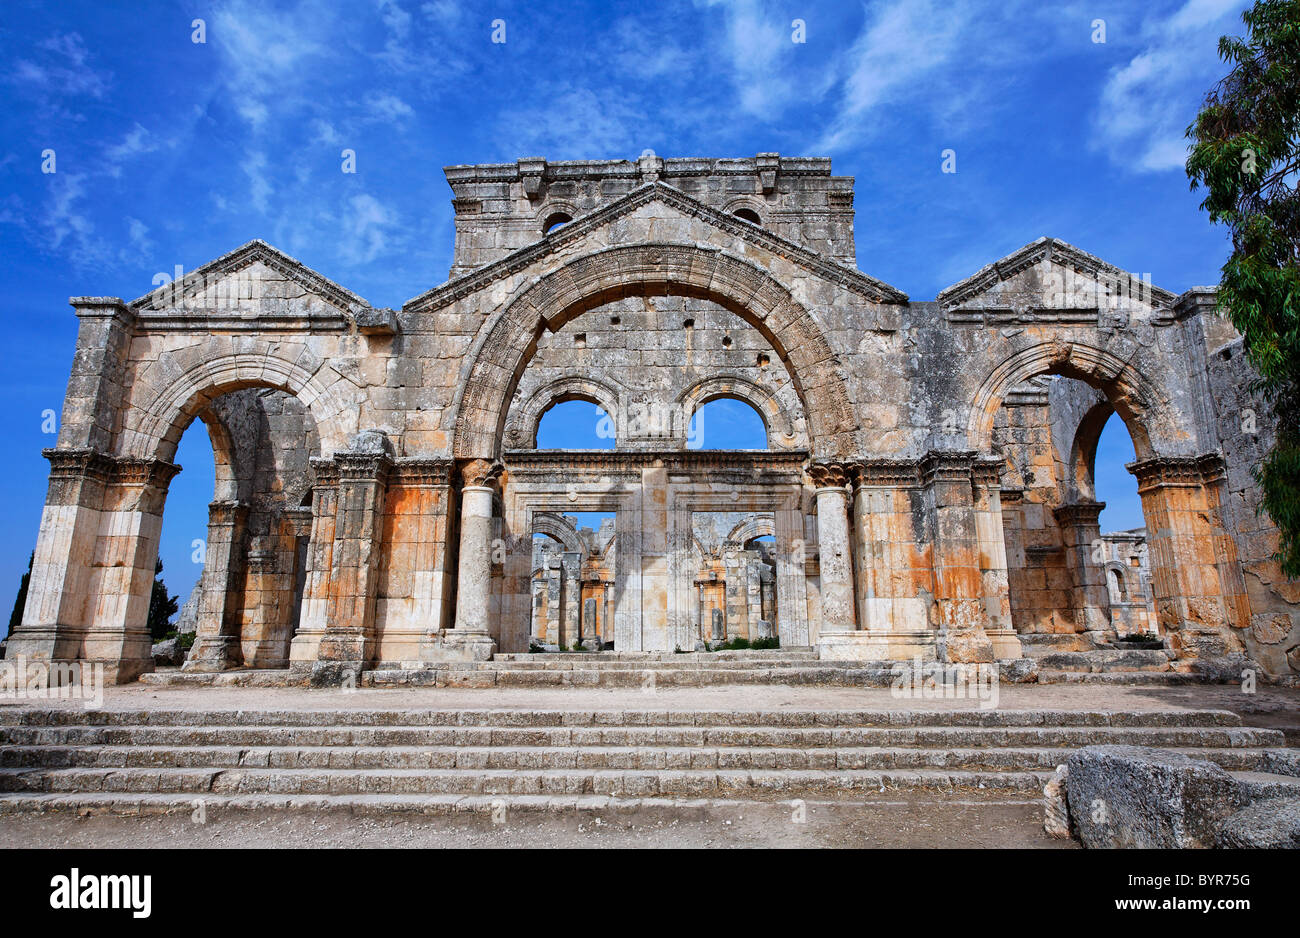 Les ruines de l'église de St Siméon, la Syrie Banque D'Images